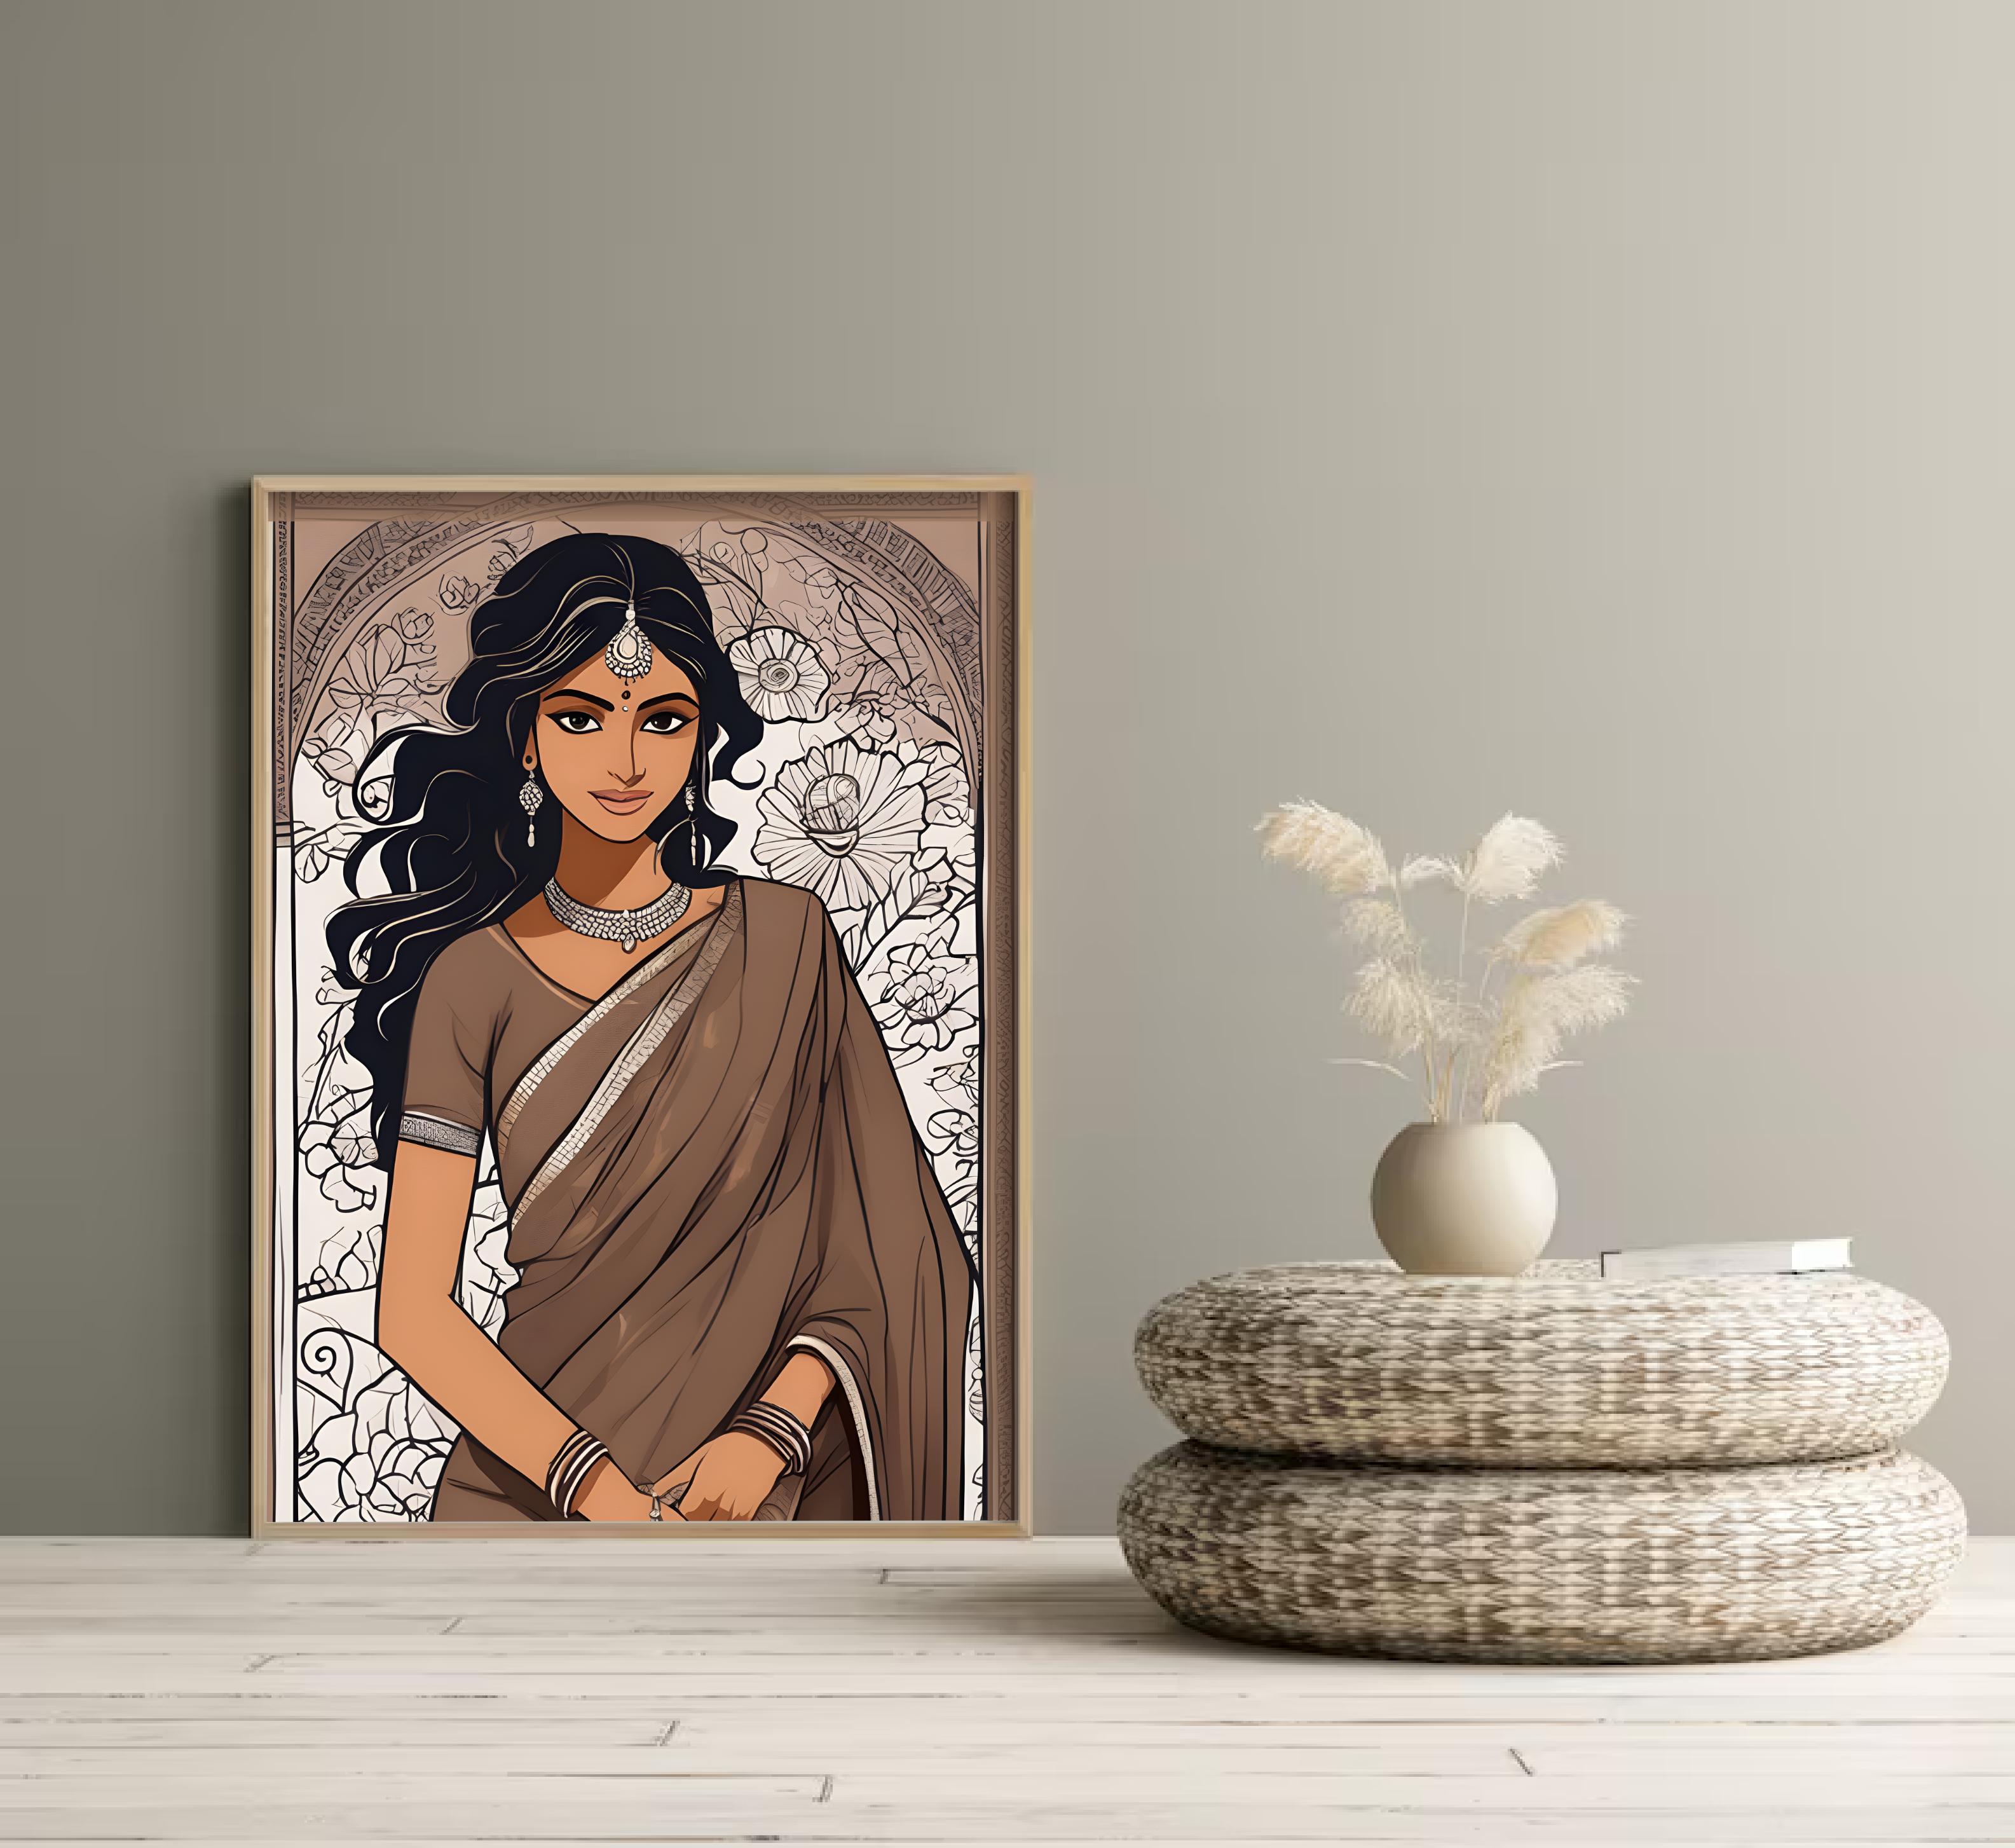 Indian Woman Art Print, Indian Art, Indian Girl Art, Indian Woman in Saree, Digital Print